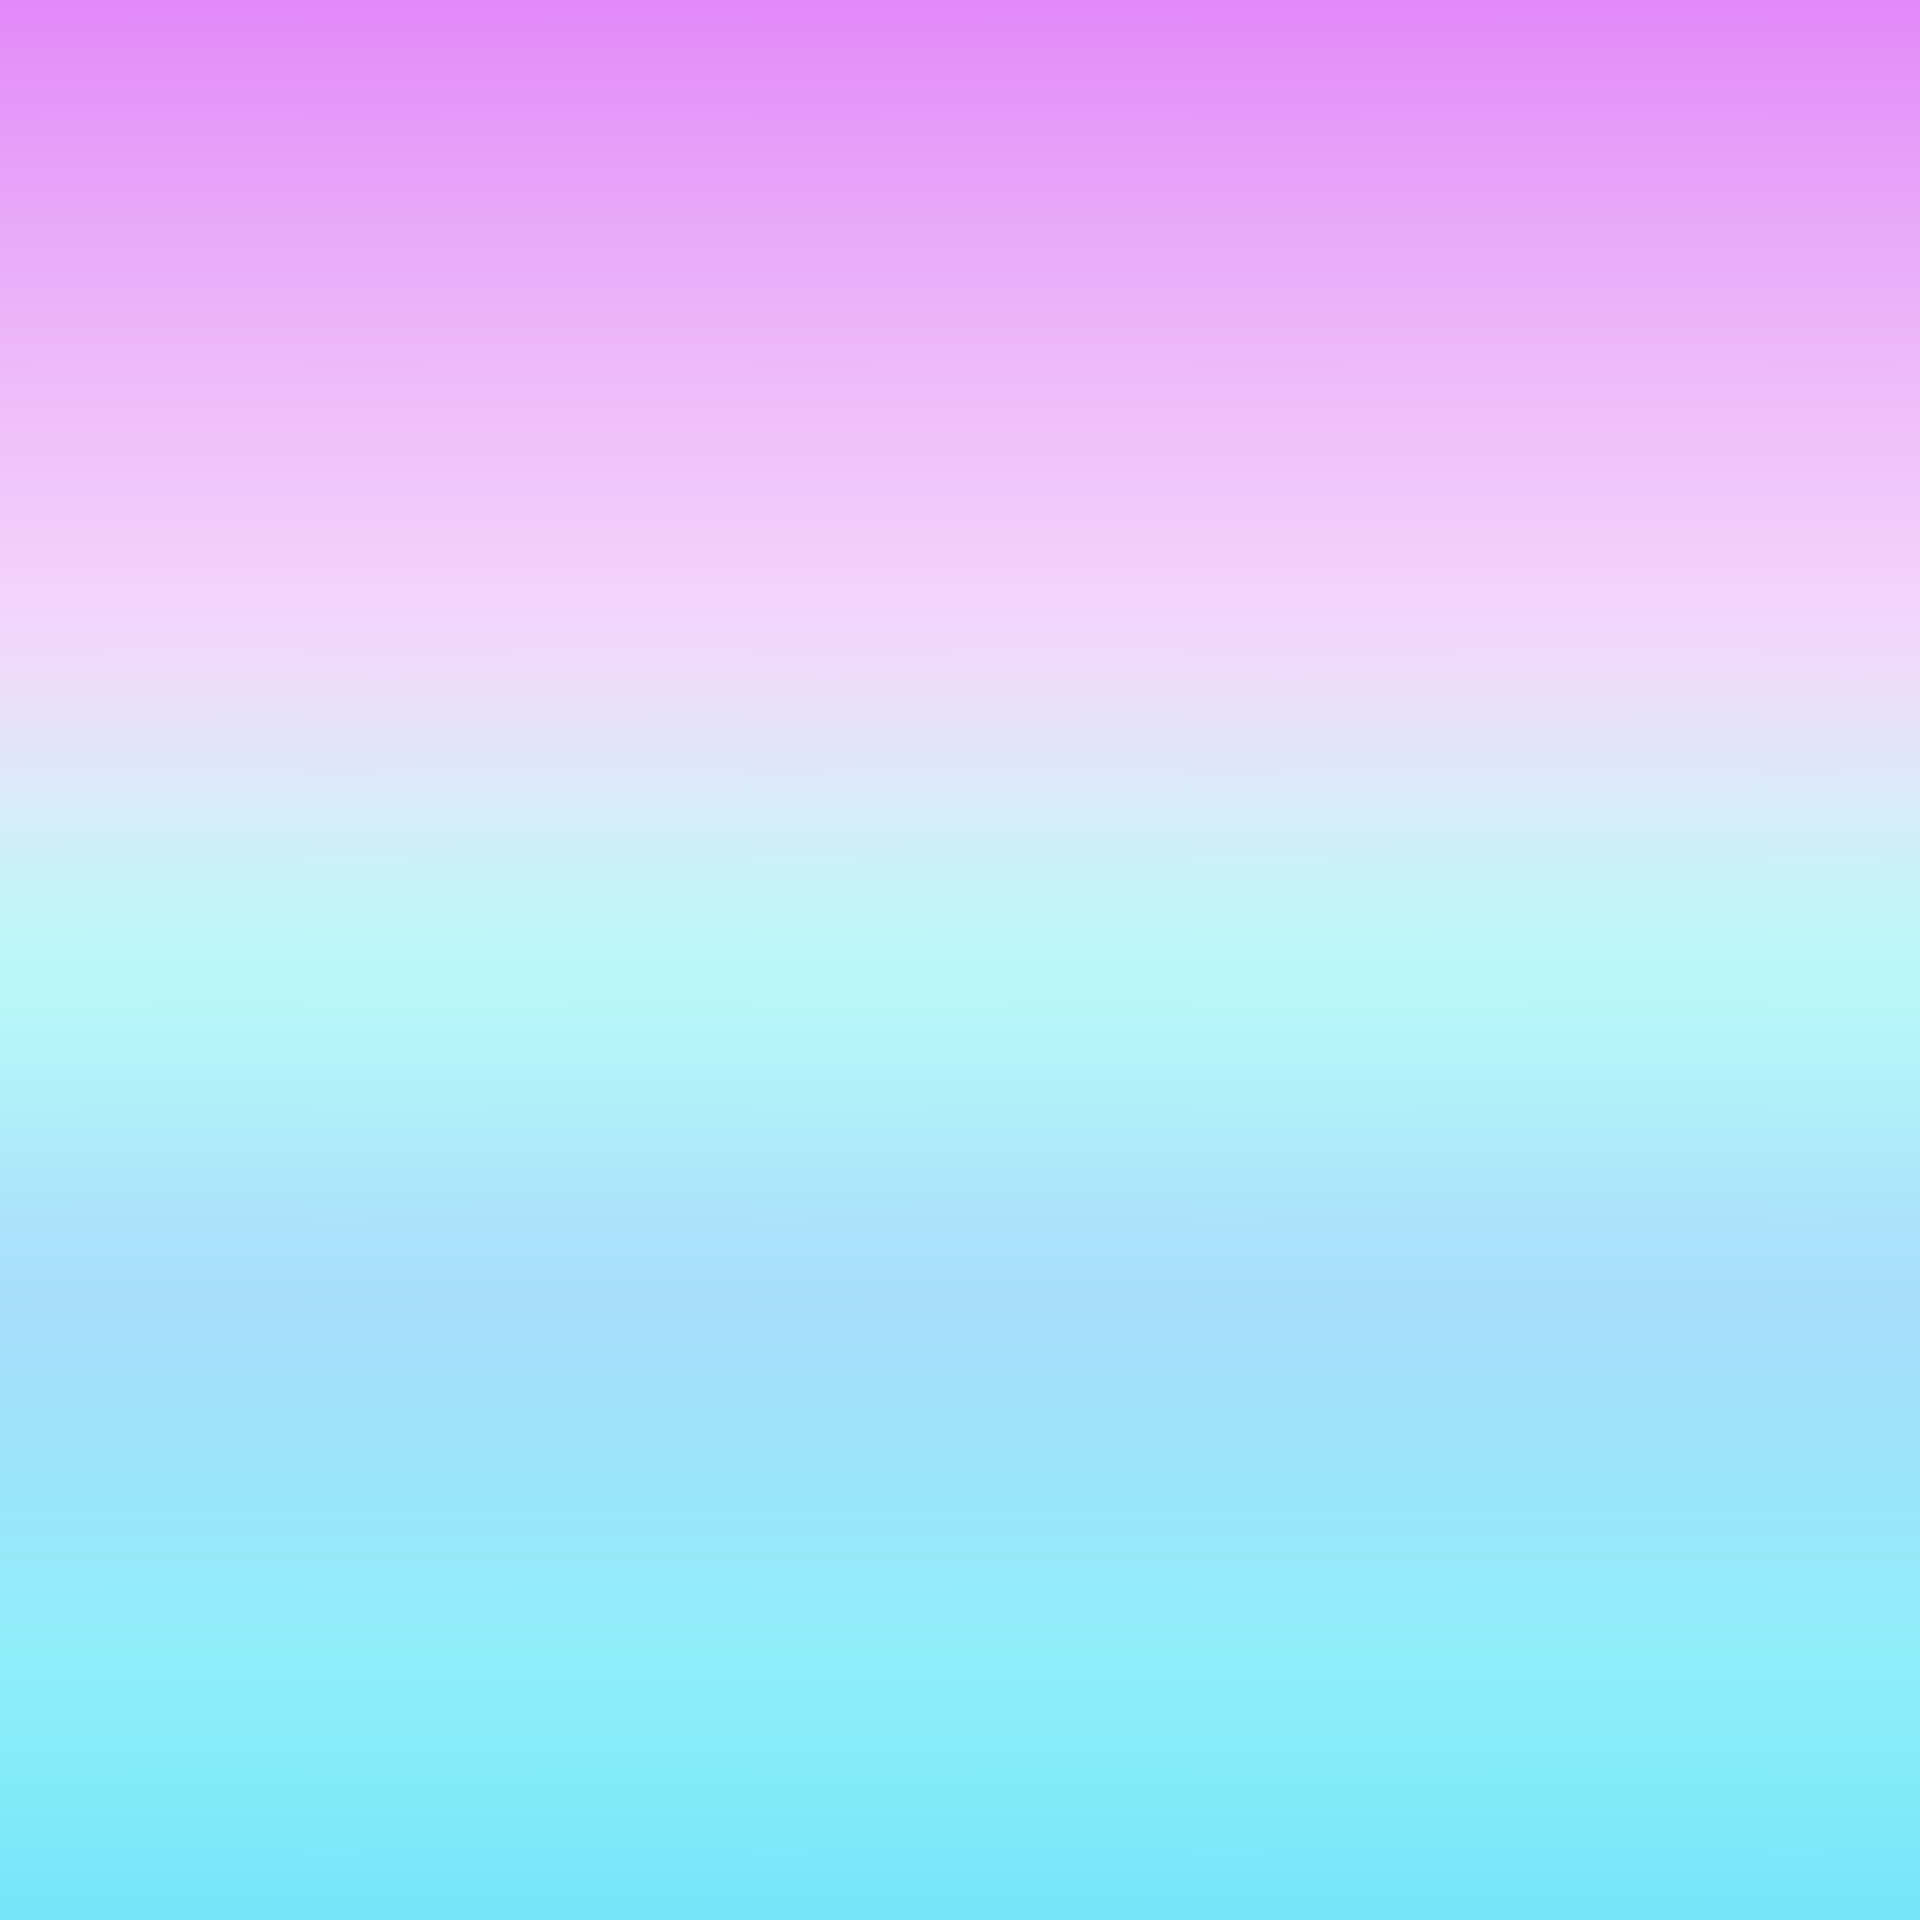 Blauerombre-hintergrund Mit Violetter, Weißer Und Blauer Farbgebung